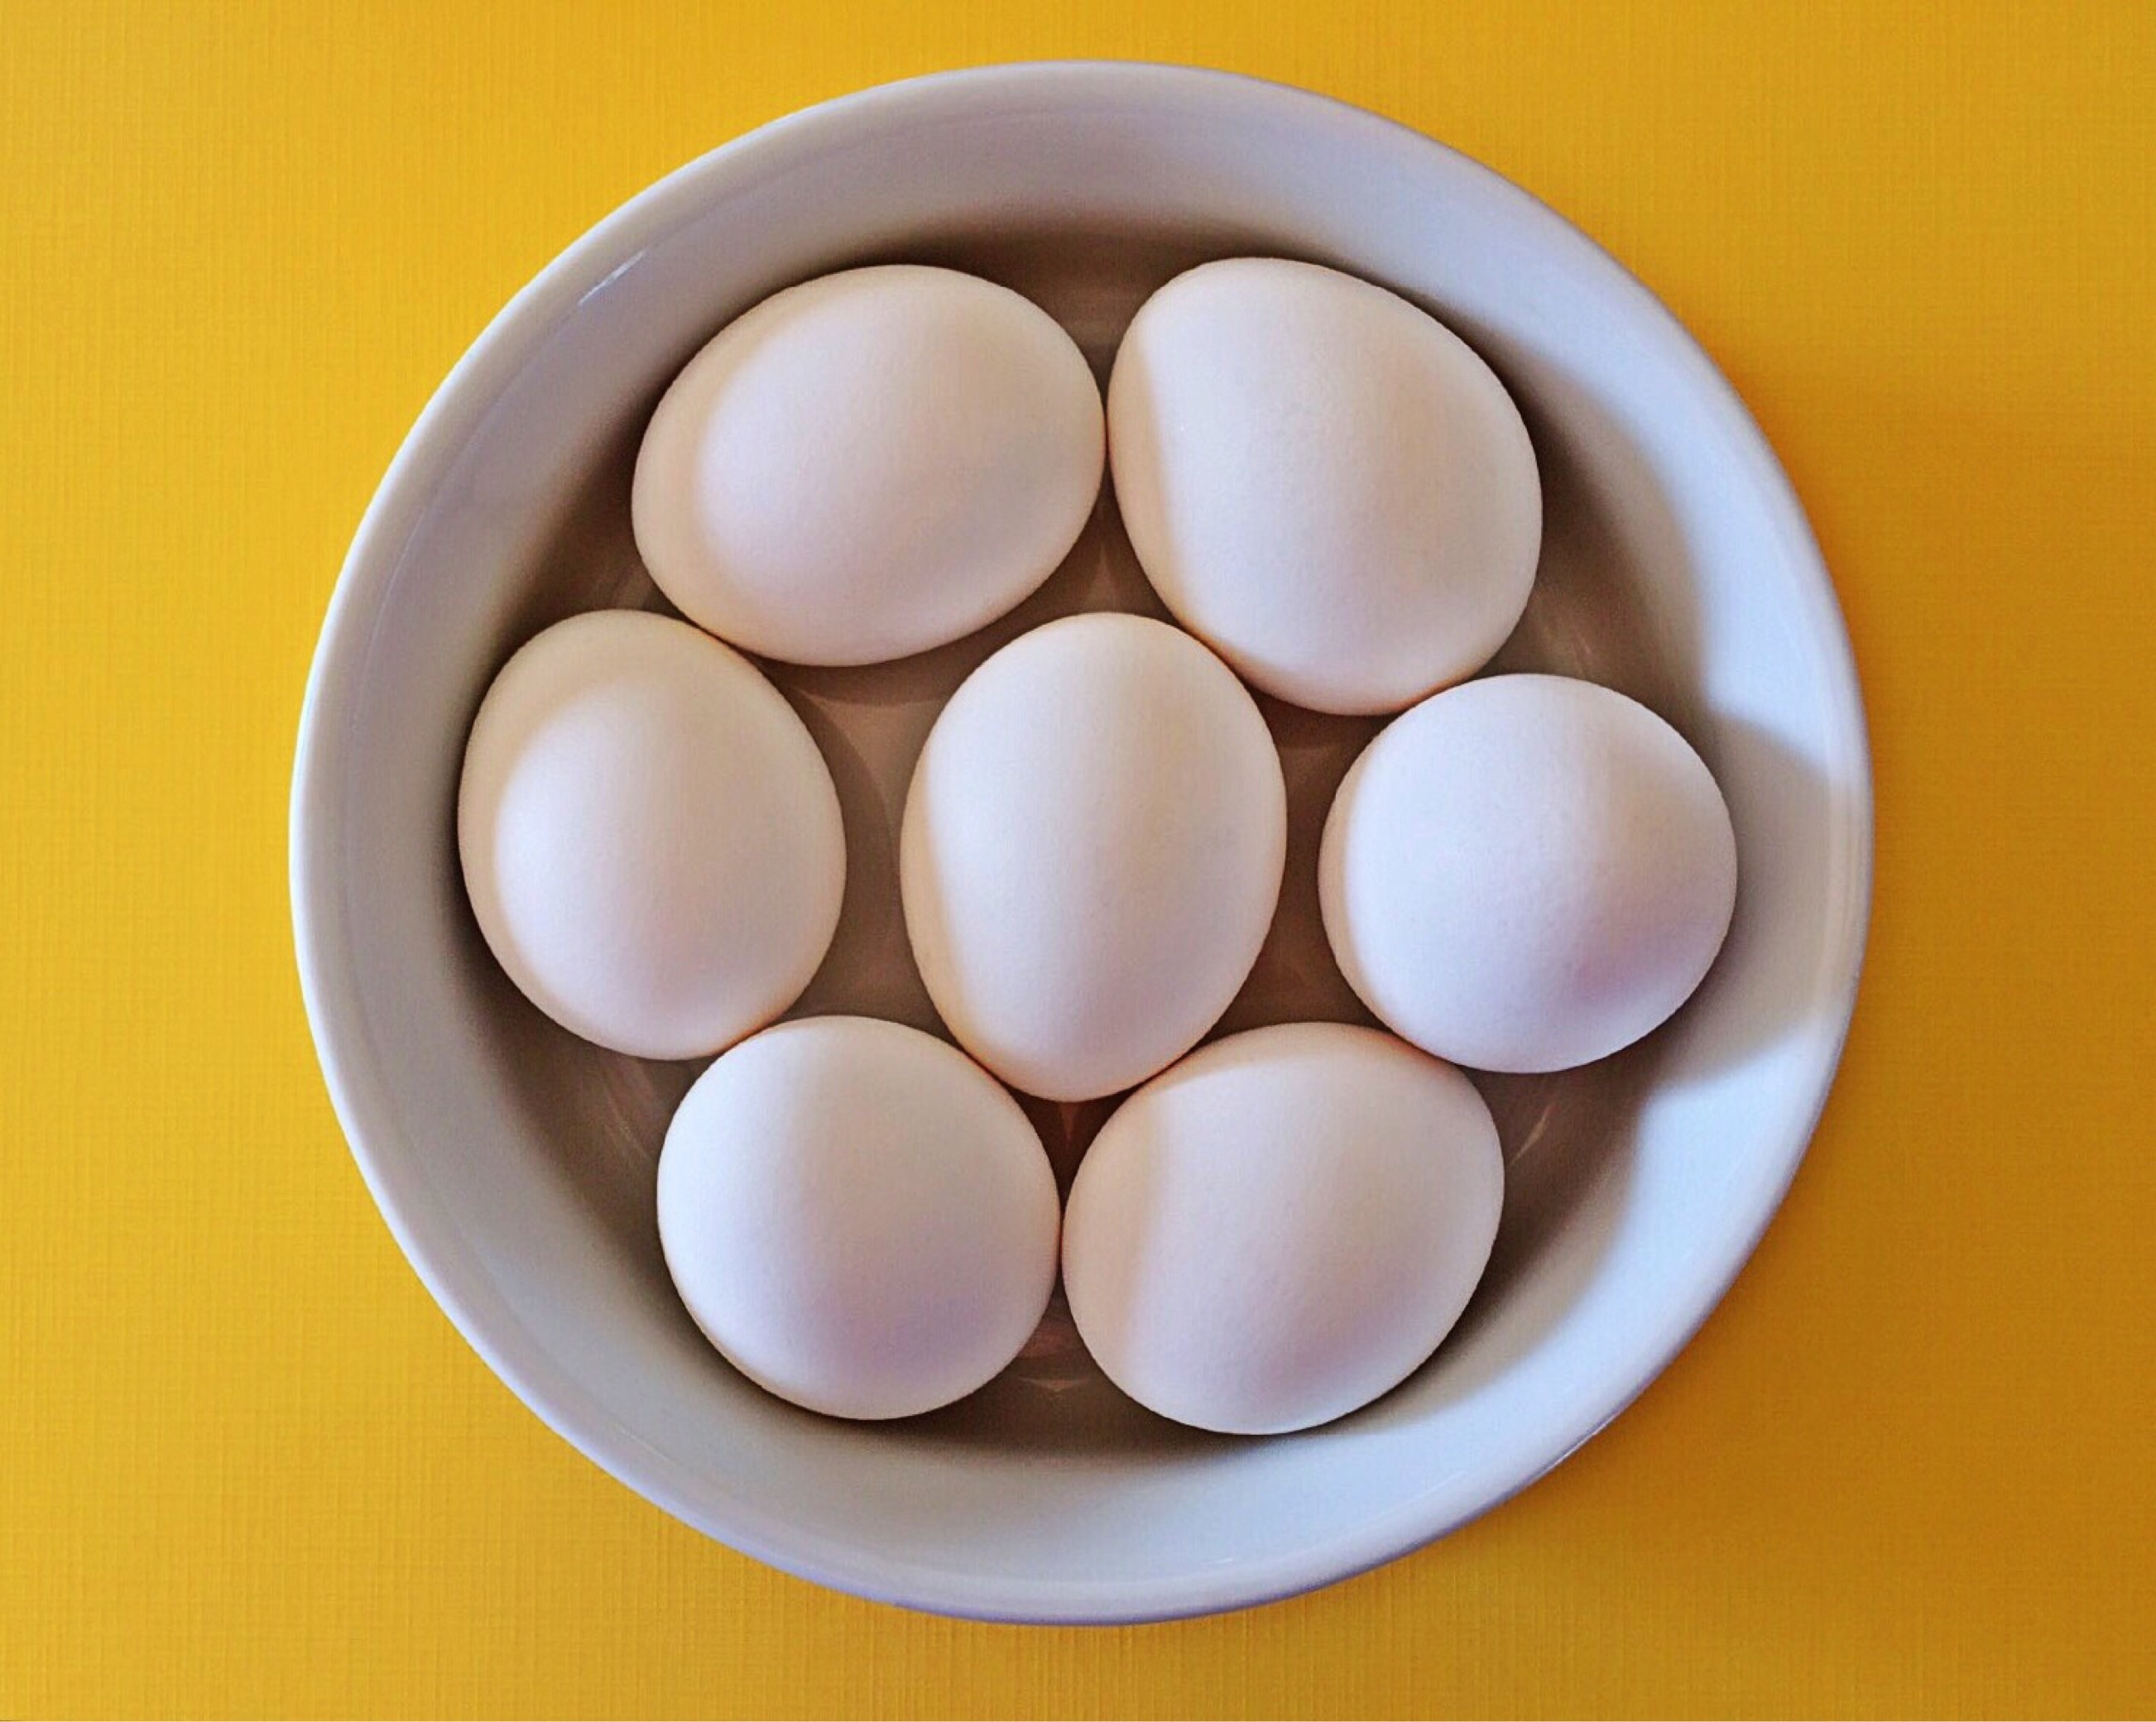 7 eggs on white ceramic bowl